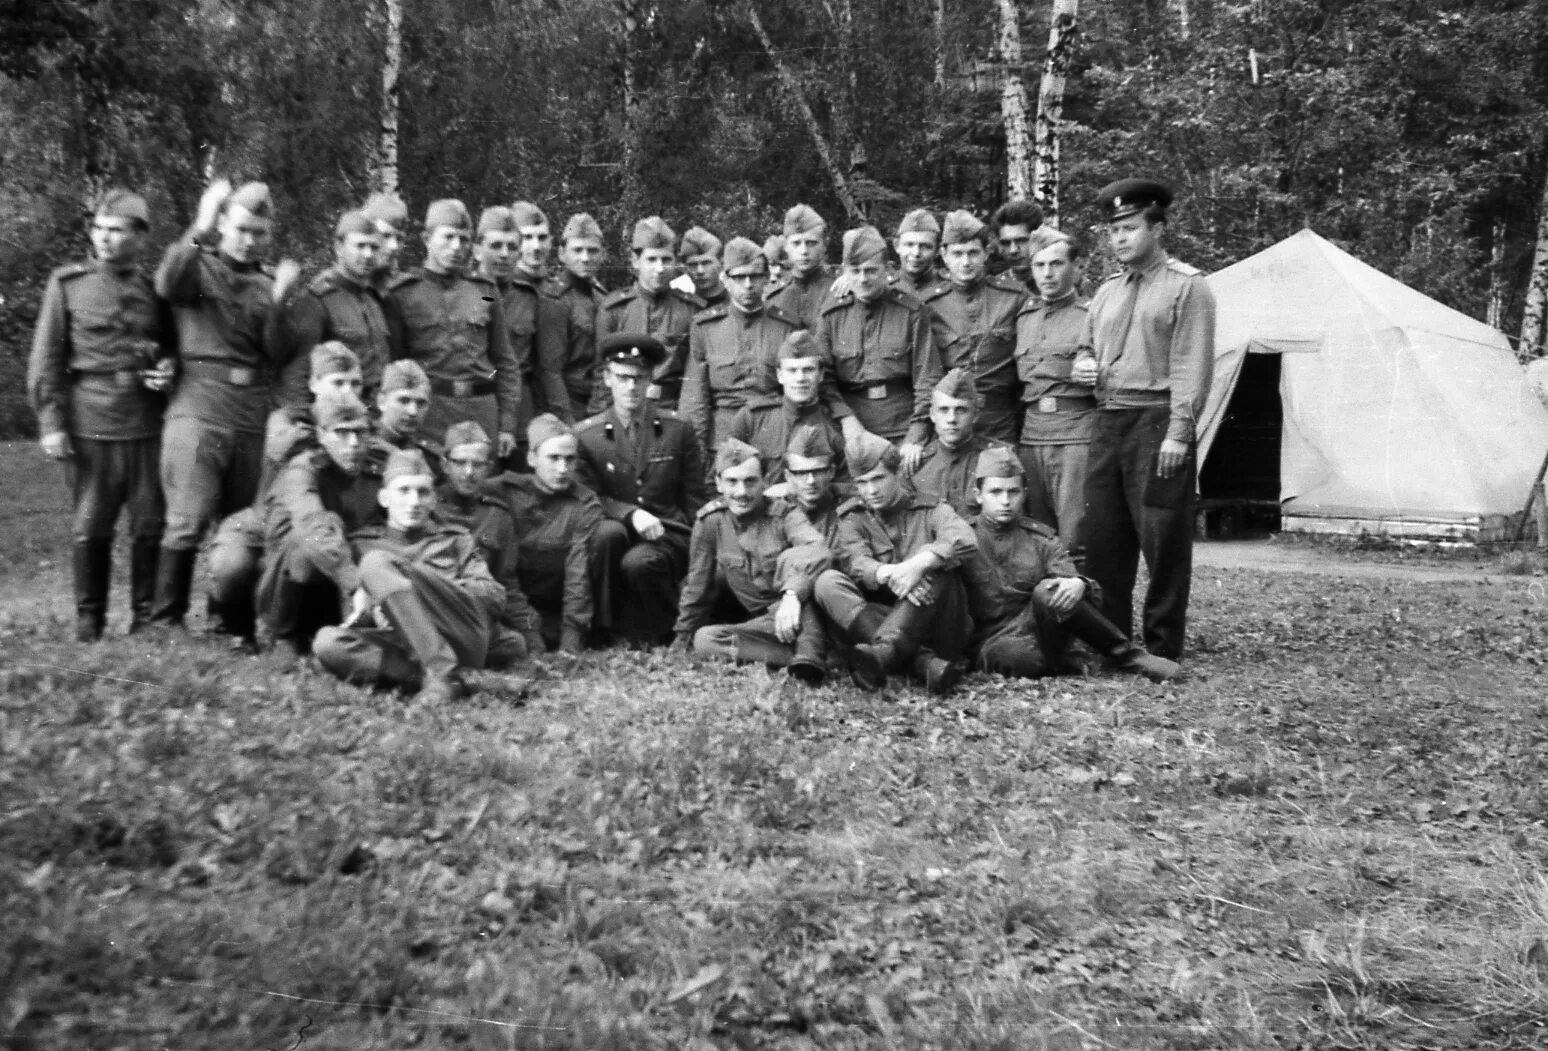 Гороховецкие лагеря в 1941 году. Чебаркульский военный лагерь 1941. Бершетский военный лагерь 1941. Гороховецкие лагеря в 1940 году. Three camps